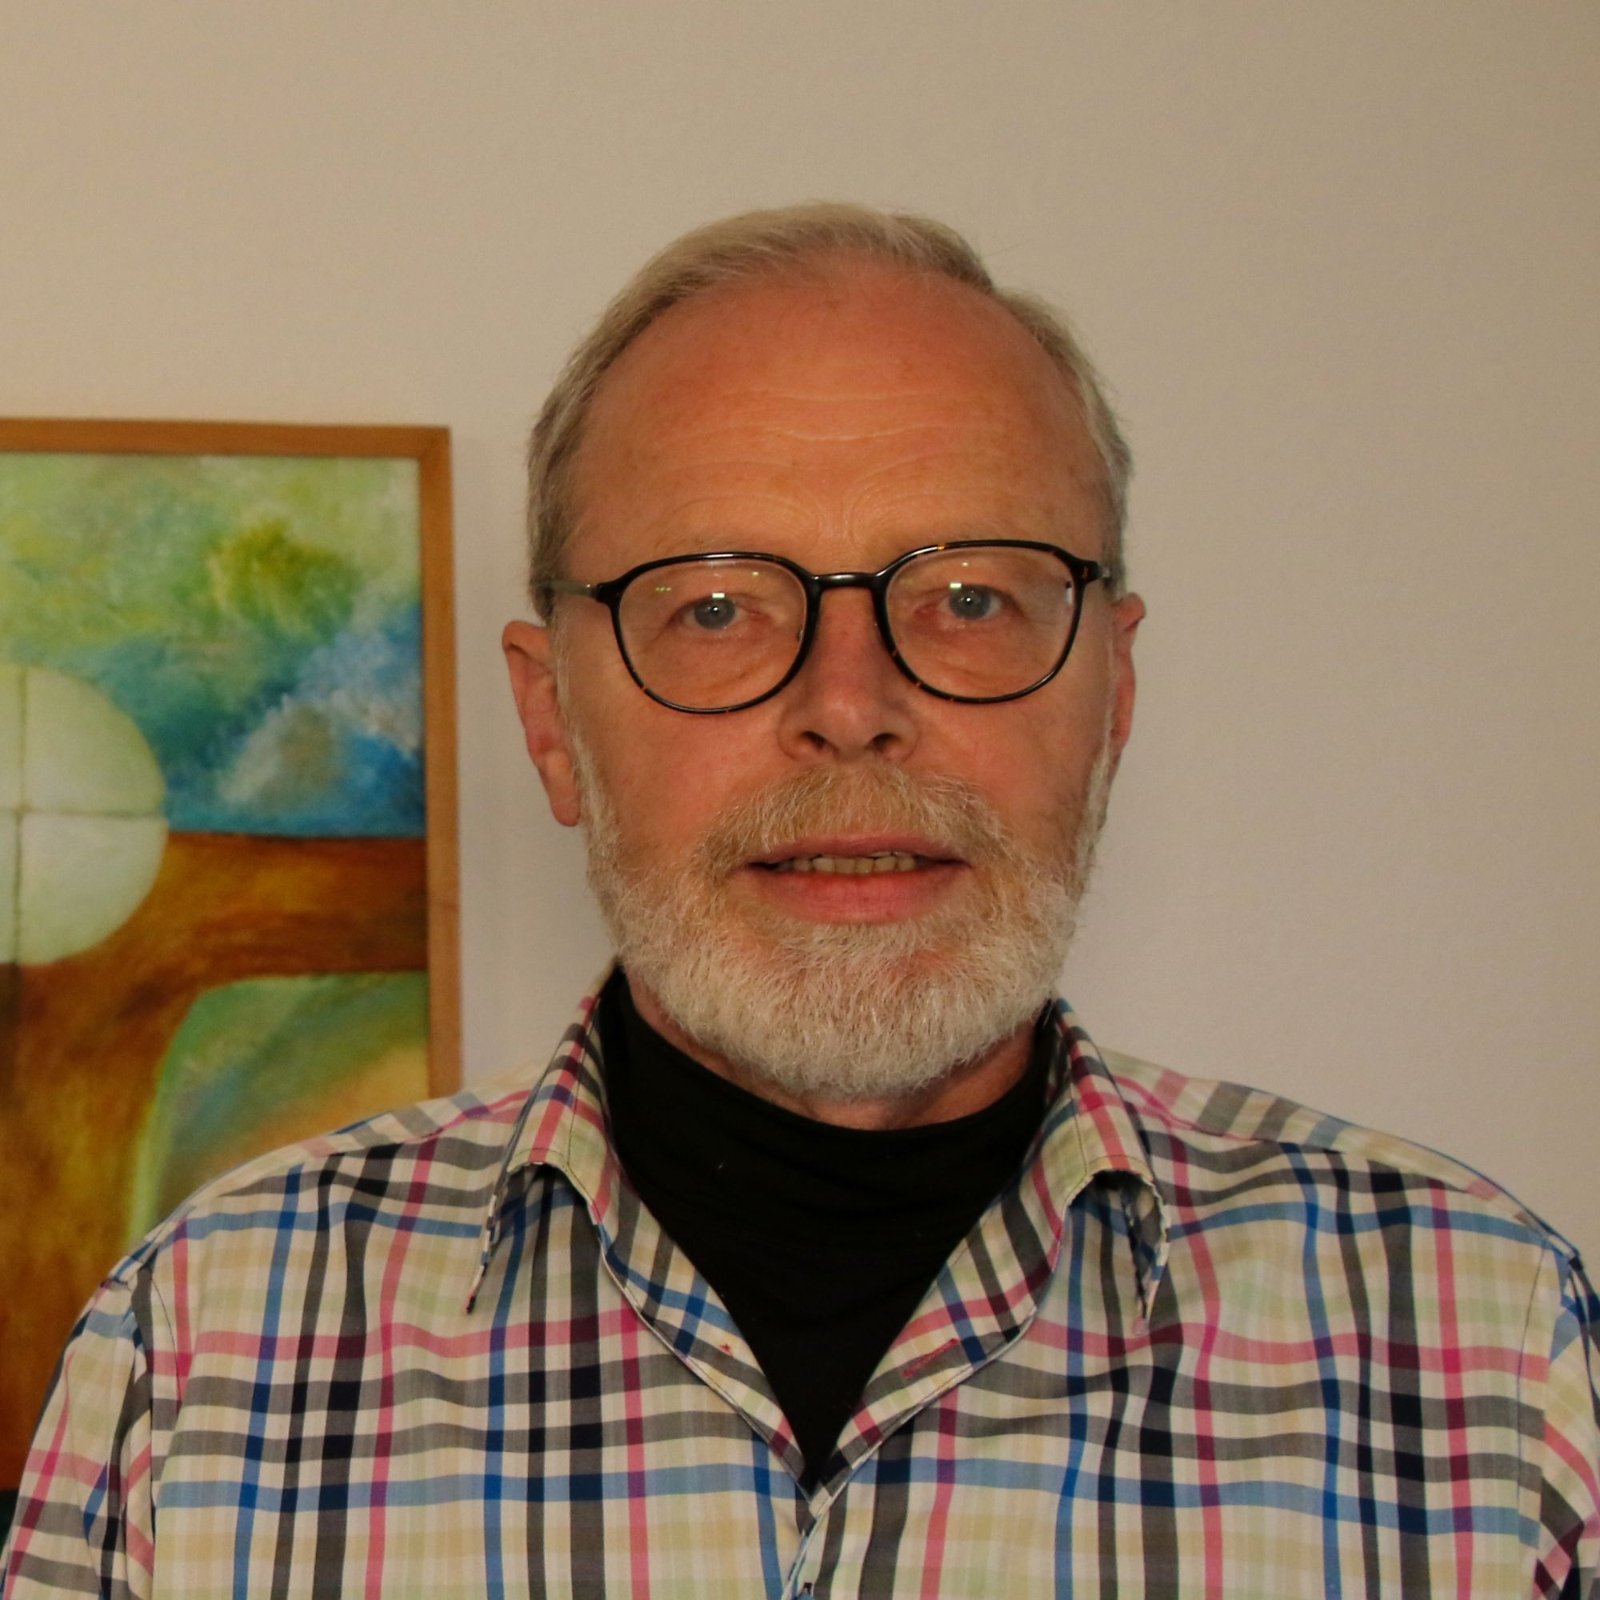 Diakon i.R. Gregor Veer (c) Markus Brandt